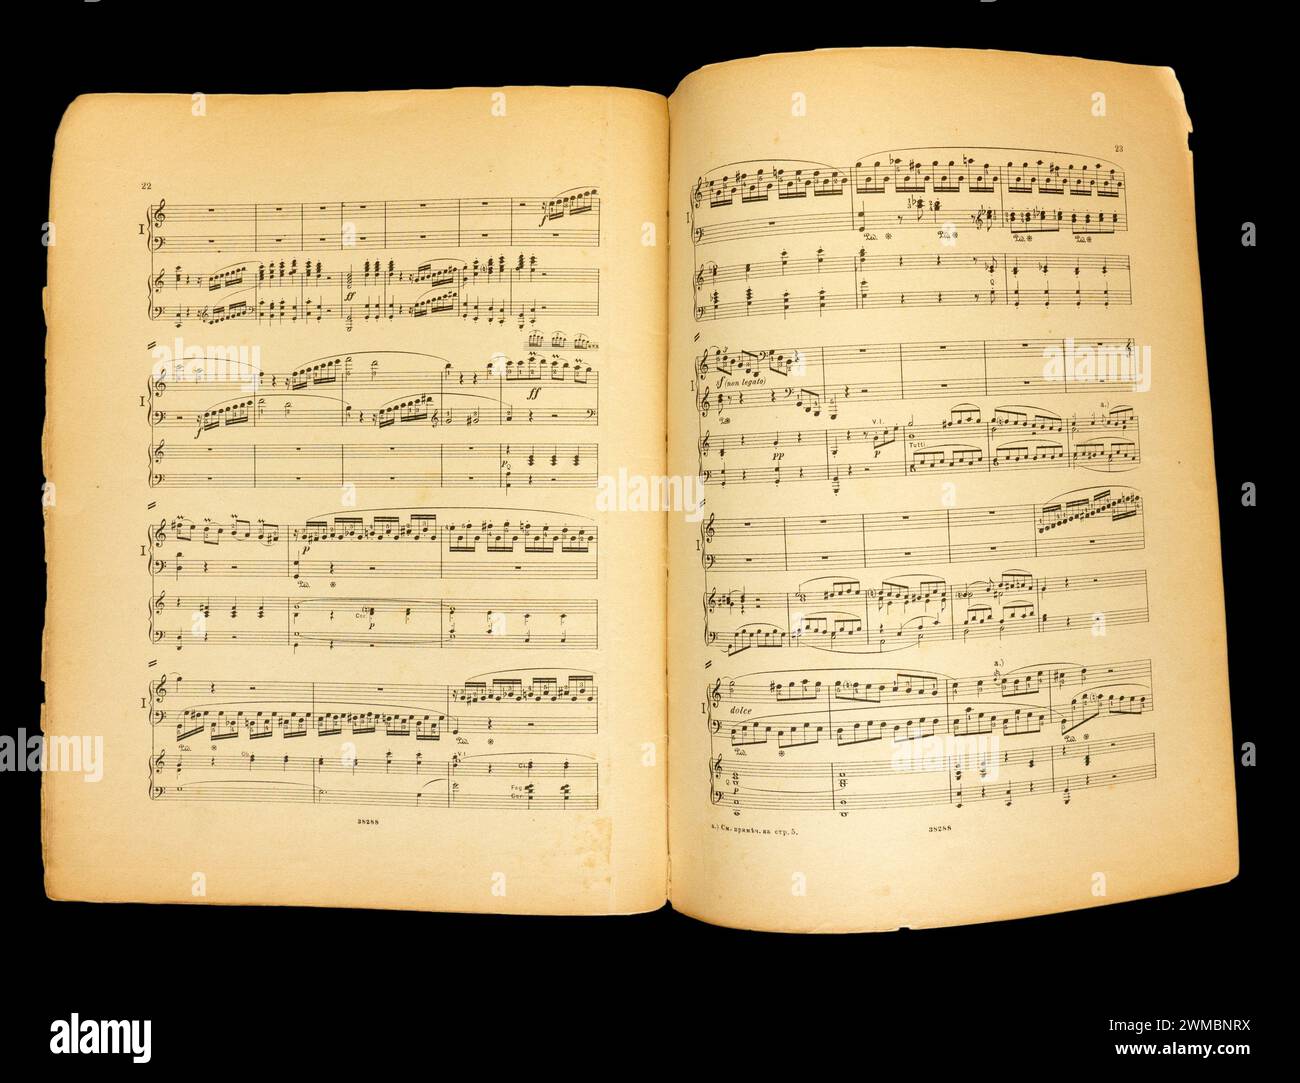 Spartiti musicali Concerto per pianoforte n. 1 in do maggiore di Ludwig van Beethoven, op. 15. Foto Stock